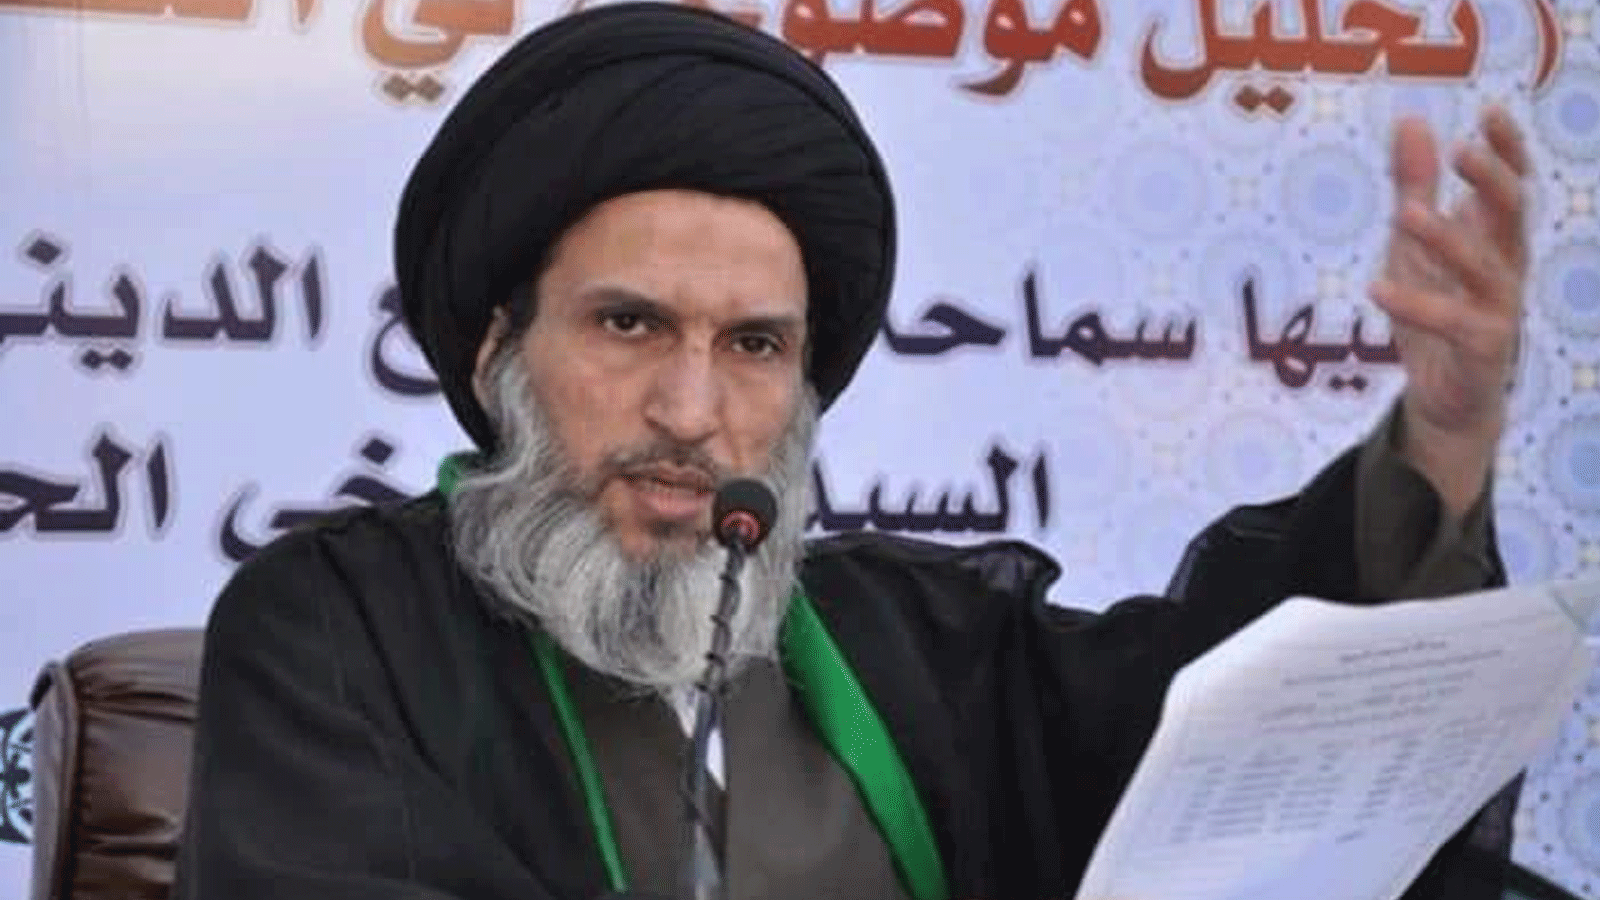 المرجع الشيعي العراقي محمد الصرخي الذي أصدر القضاء الأعلى مذكرة باعتقاله لتبنيه دعوة هدم الأضرحة. الأربعاء 13 نيسان\ أبريل 2022 (تويتر)